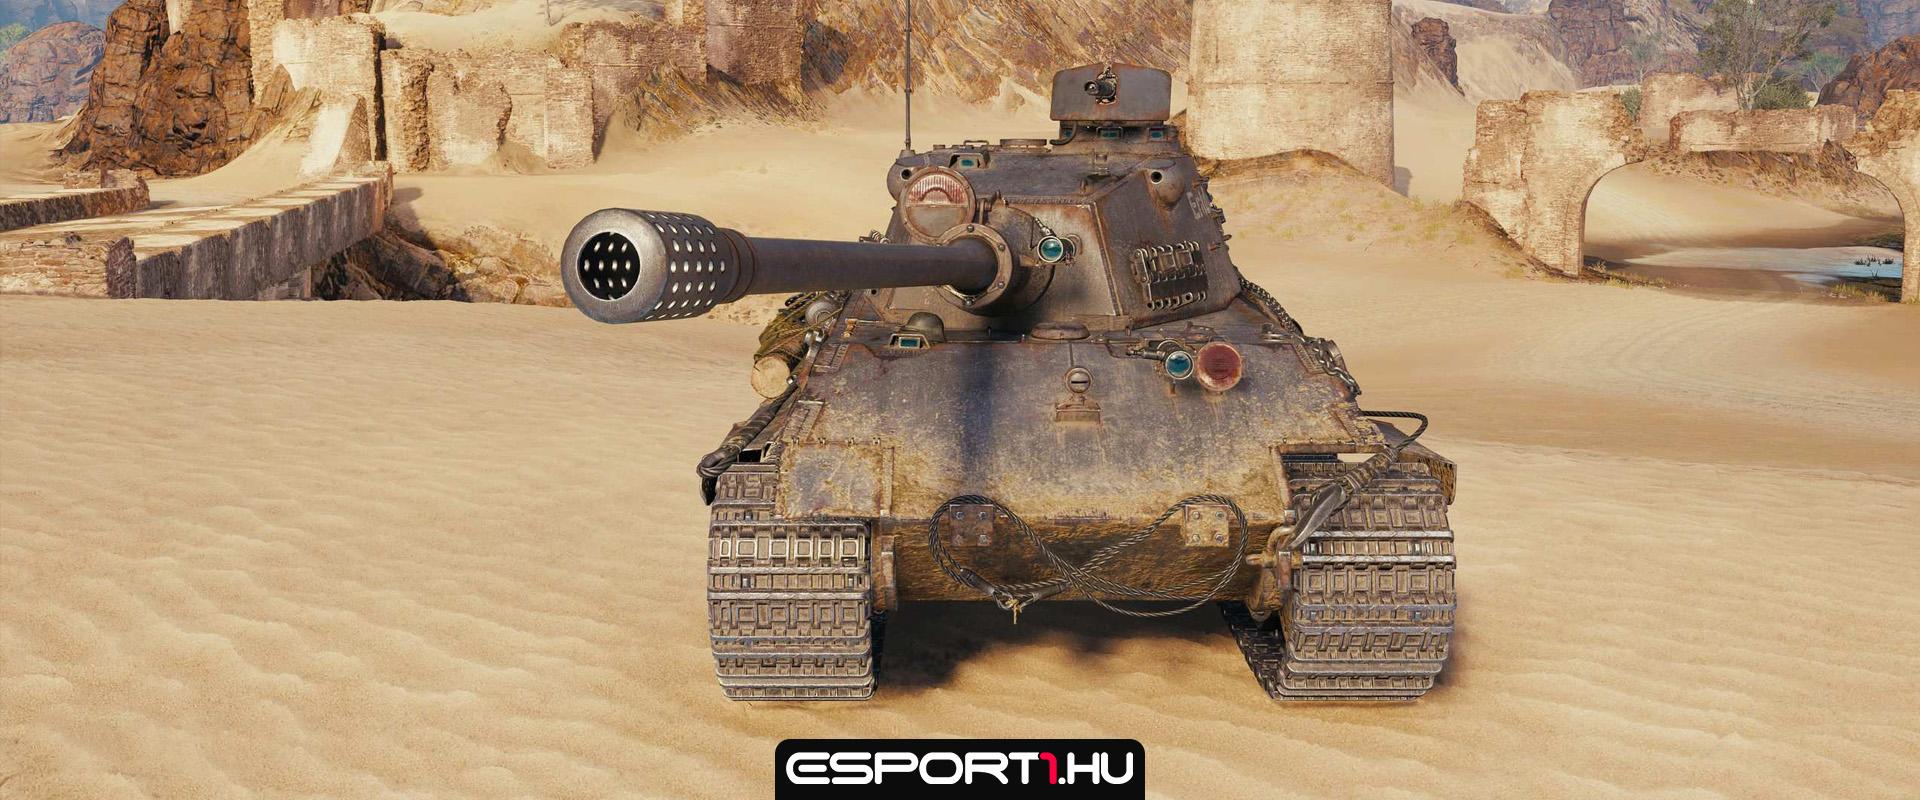 1.17-es frissítés álcastílusok: Panzersturmpioneer bemutató